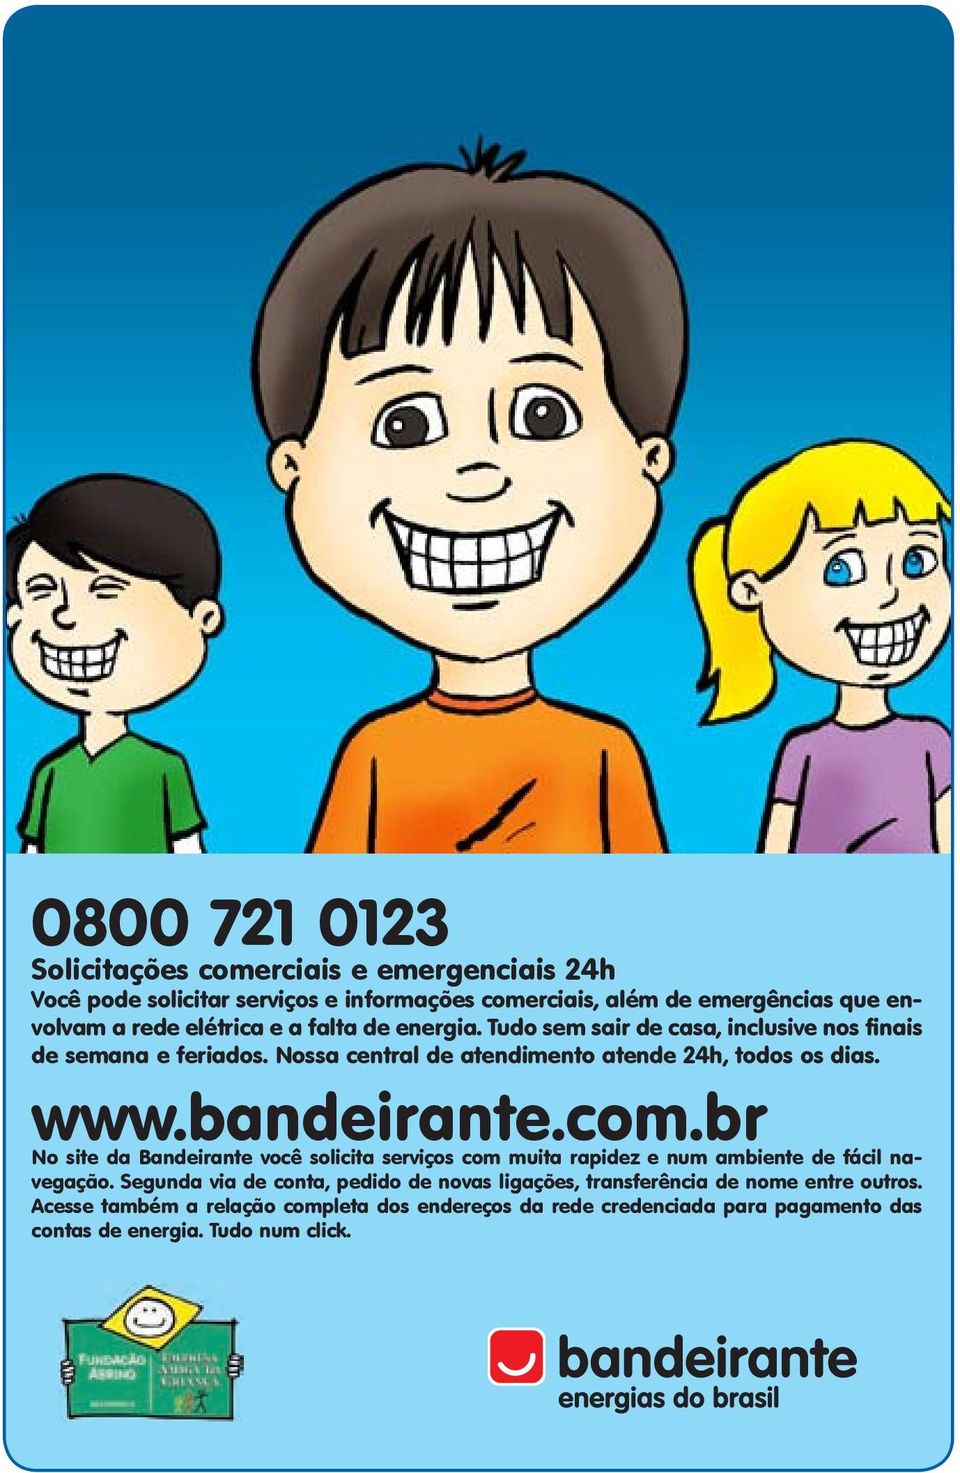 bandeirante.com.br No site da Bandeirante você solicita serviços com muita rapidez e num ambiente de fácil navegação.